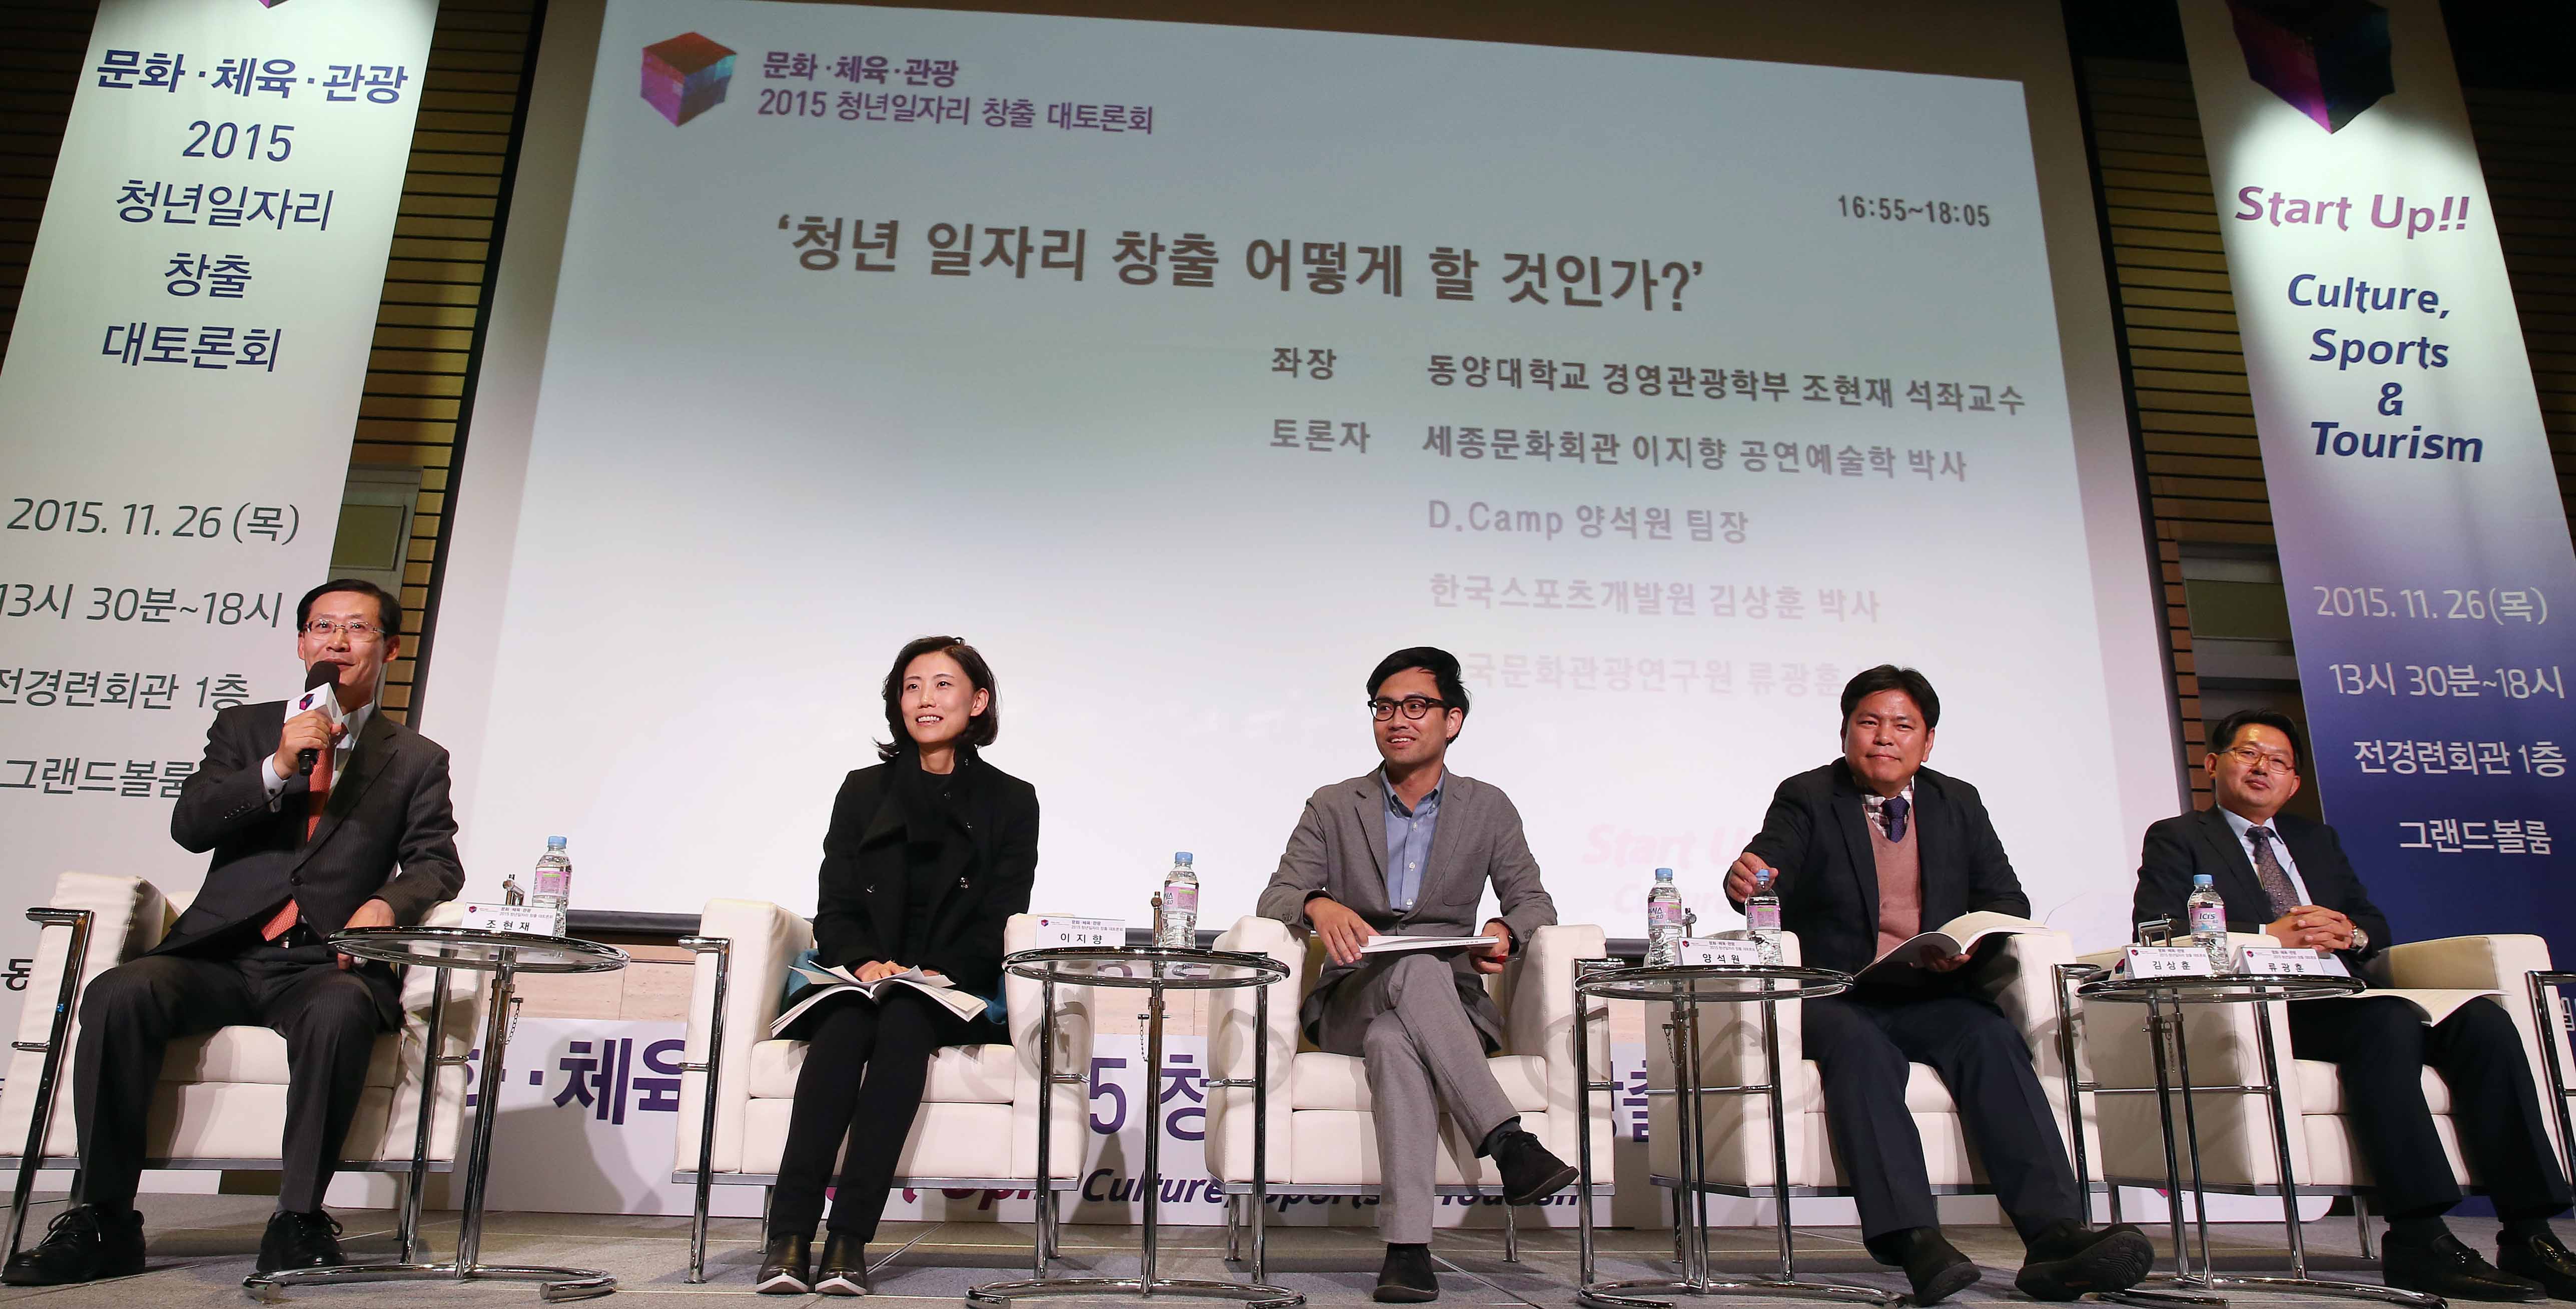 ‘2015 청년일자리 창출 대토론회’ 개최